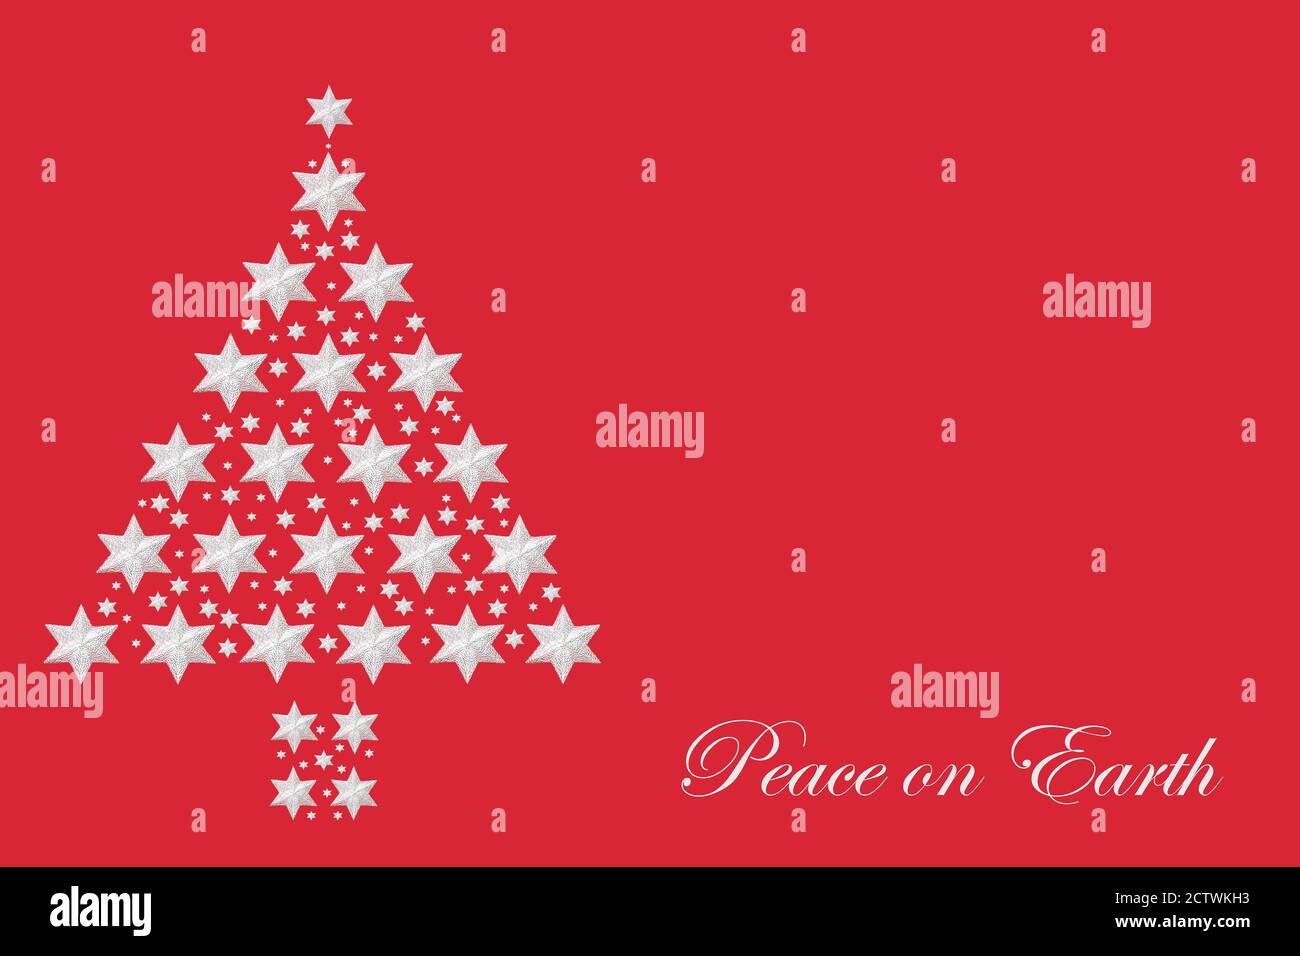 Concept de paix sur terre avec arbre étoile d'argent de Noël abstrait sur fond rouge. Composition minimaliste pour les fêtes. Banque D'Images